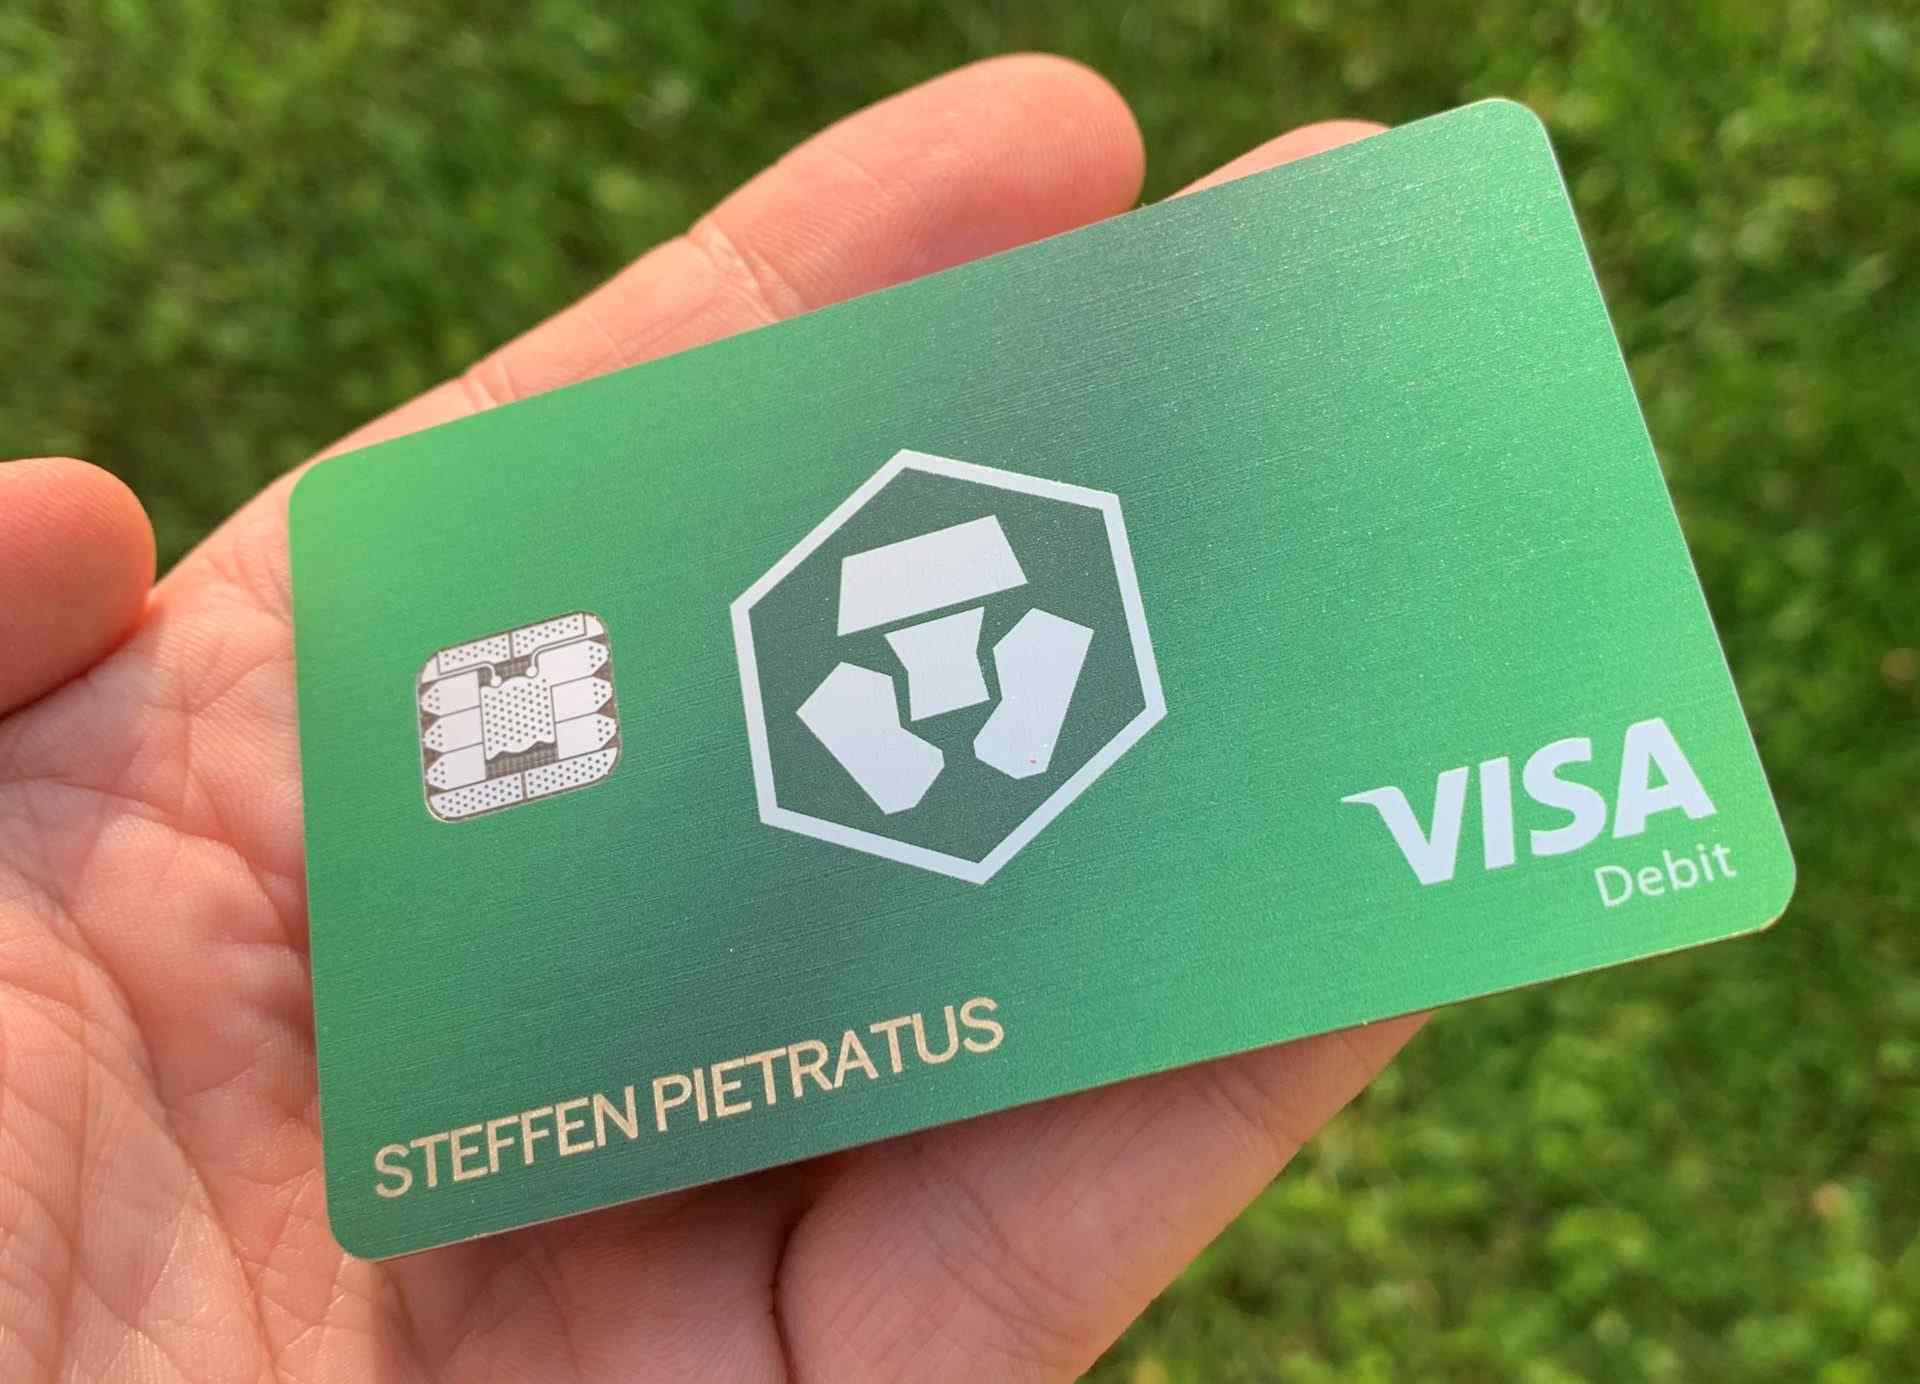 crypto.com business card